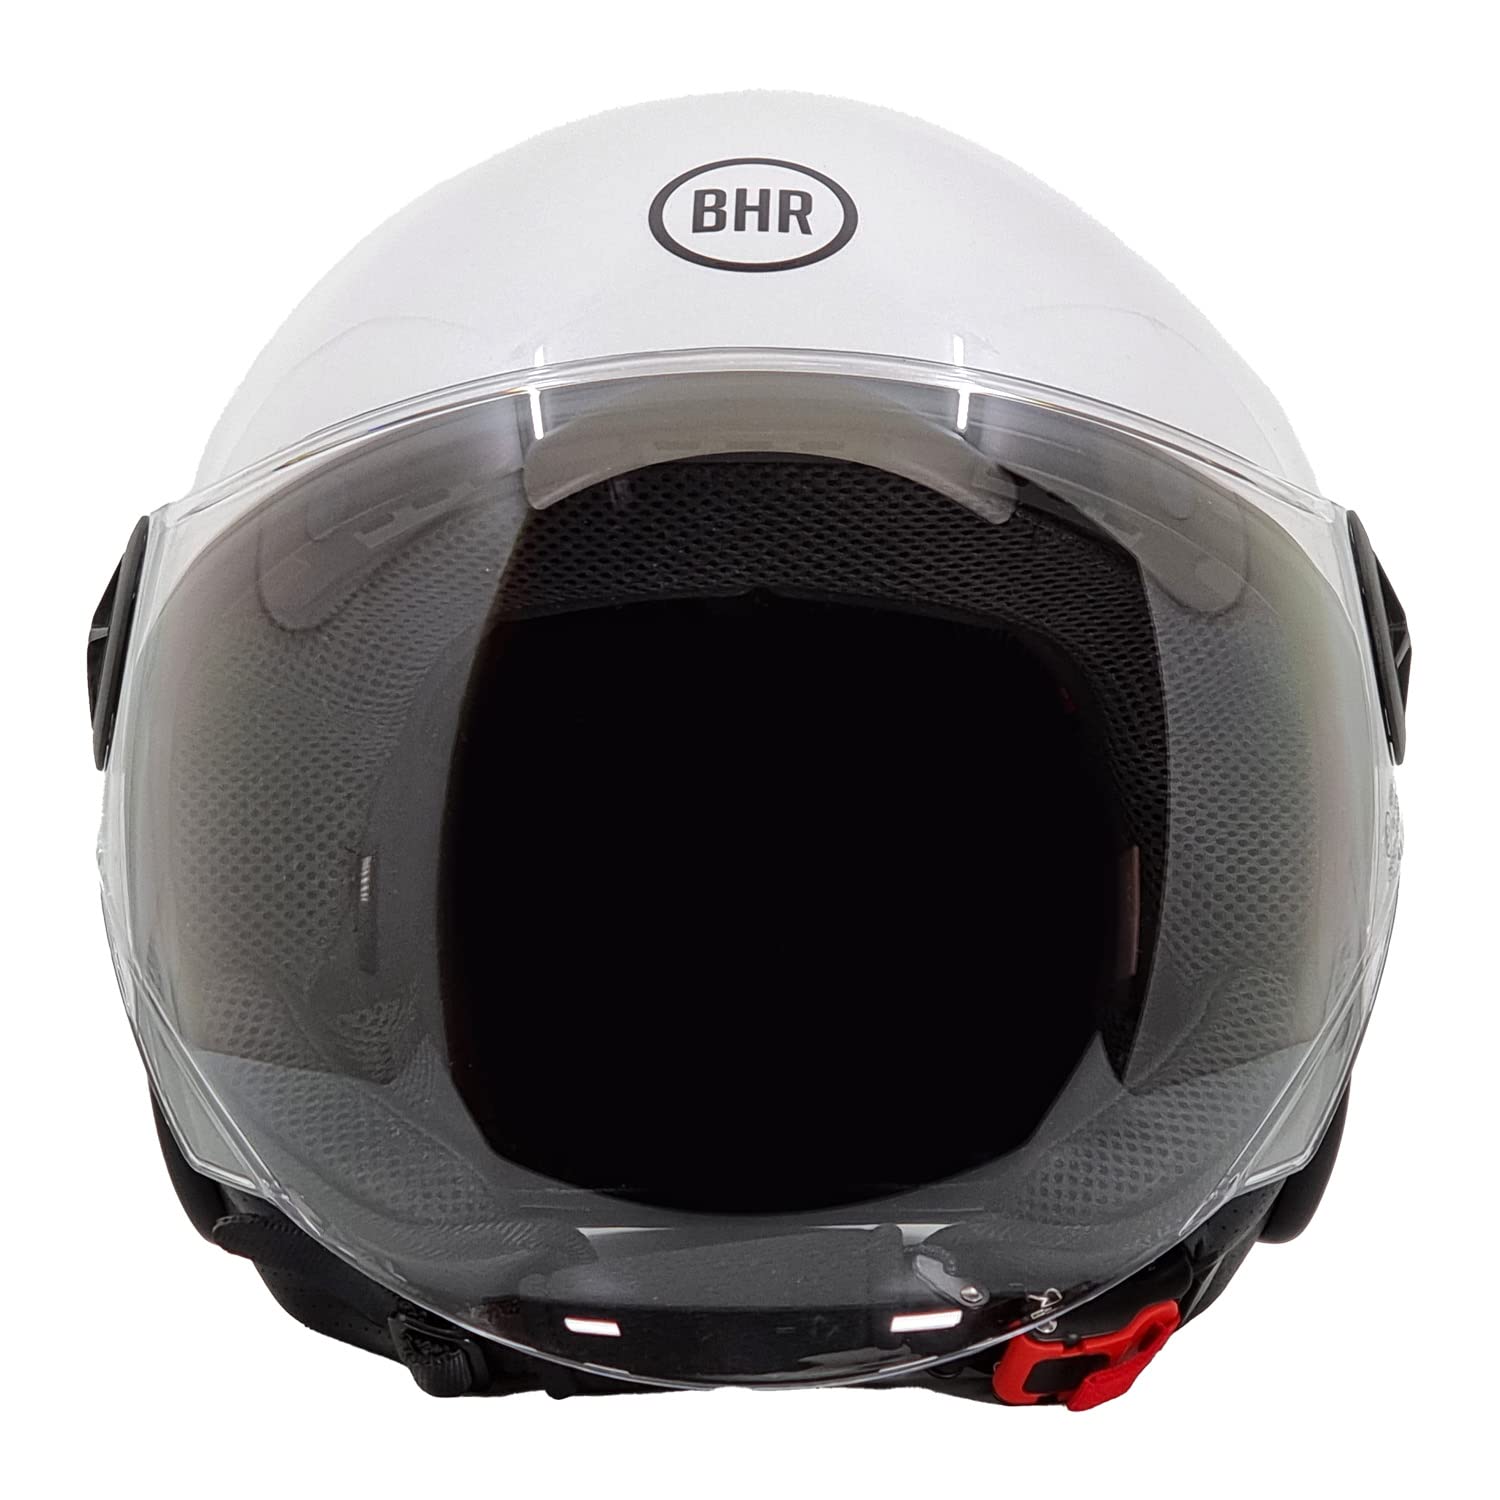 BHR Helm Demi-Jet 832 MINIMAL, Scooter Helm Zulassung ECE 22.06 Leicht und kompakt, ideal für die Stadt und unter der Sitzbank, Weiß, XS